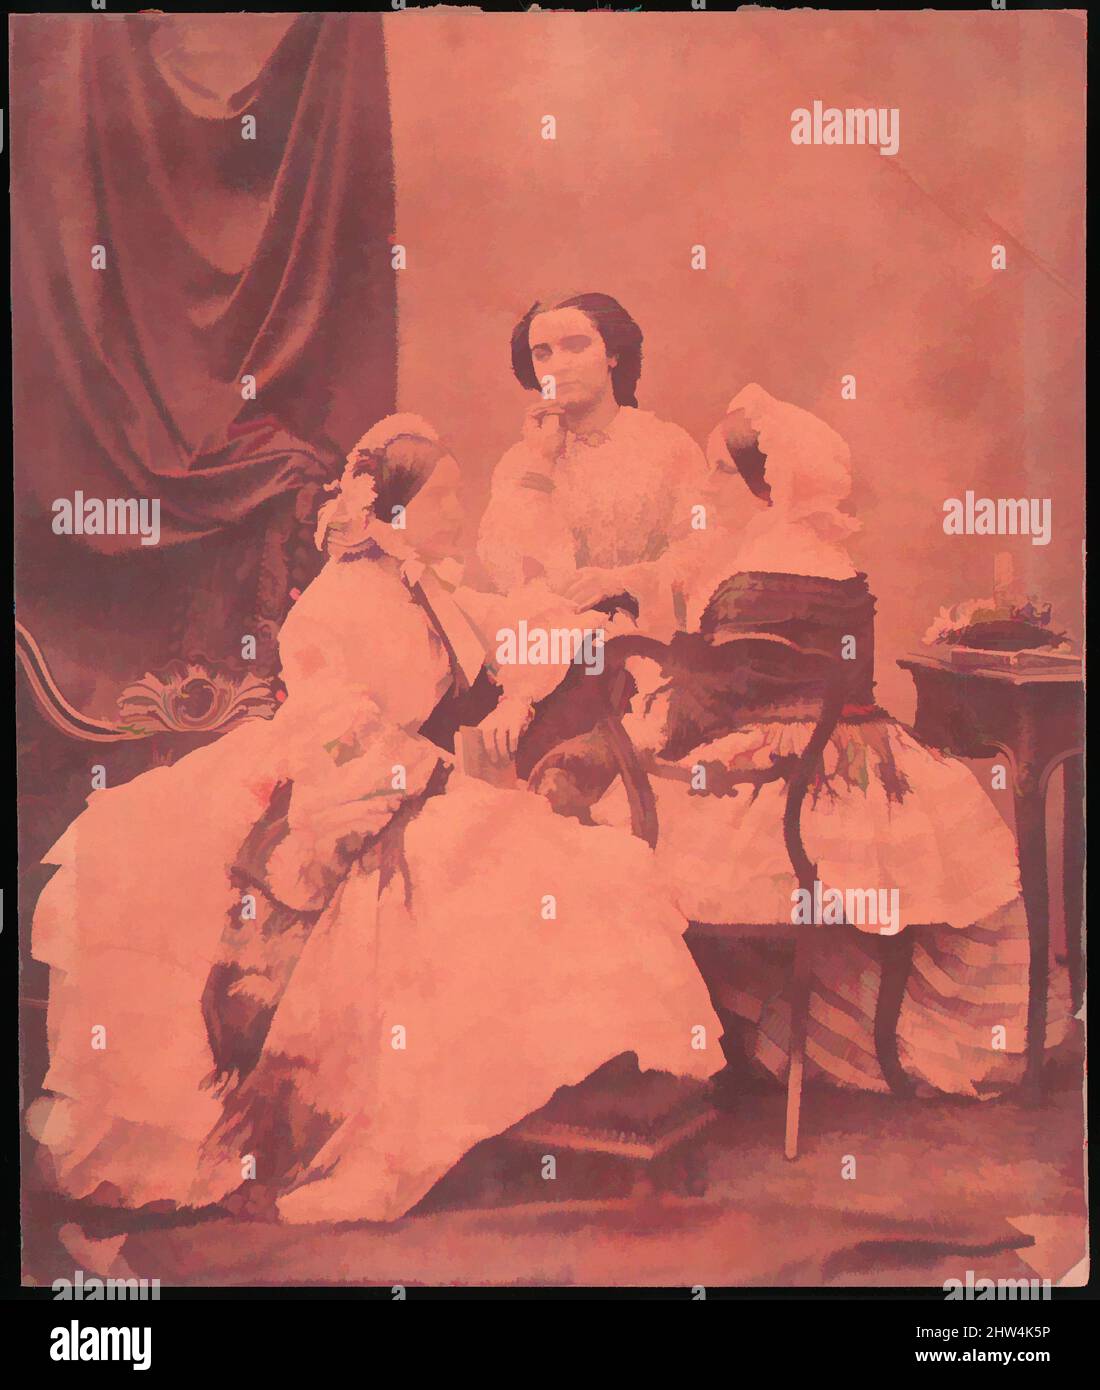 Art Inspired by Three Claudet Family Women Seated in Studio, 1850s, Albumen-Silberdruck aus Glasnegativ, 21,1 x 17,8 cm (8 5/16 x 7 Zoll), Fotografien, Unbekannt, Klassische Werke, die von Artotop mit einem Schuss Moderne modernisiert wurden. Formen, Farbe und Wert, auffällige visuelle Wirkung auf Kunst. Emotionen durch Freiheit von Kunstwerken auf zeitgemäße Weise. Eine zeitlose Botschaft, die eine wild kreative neue Richtung verfolgt. Künstler, die sich dem digitalen Medium zuwenden und die Artotop NFT erschaffen Stockfoto